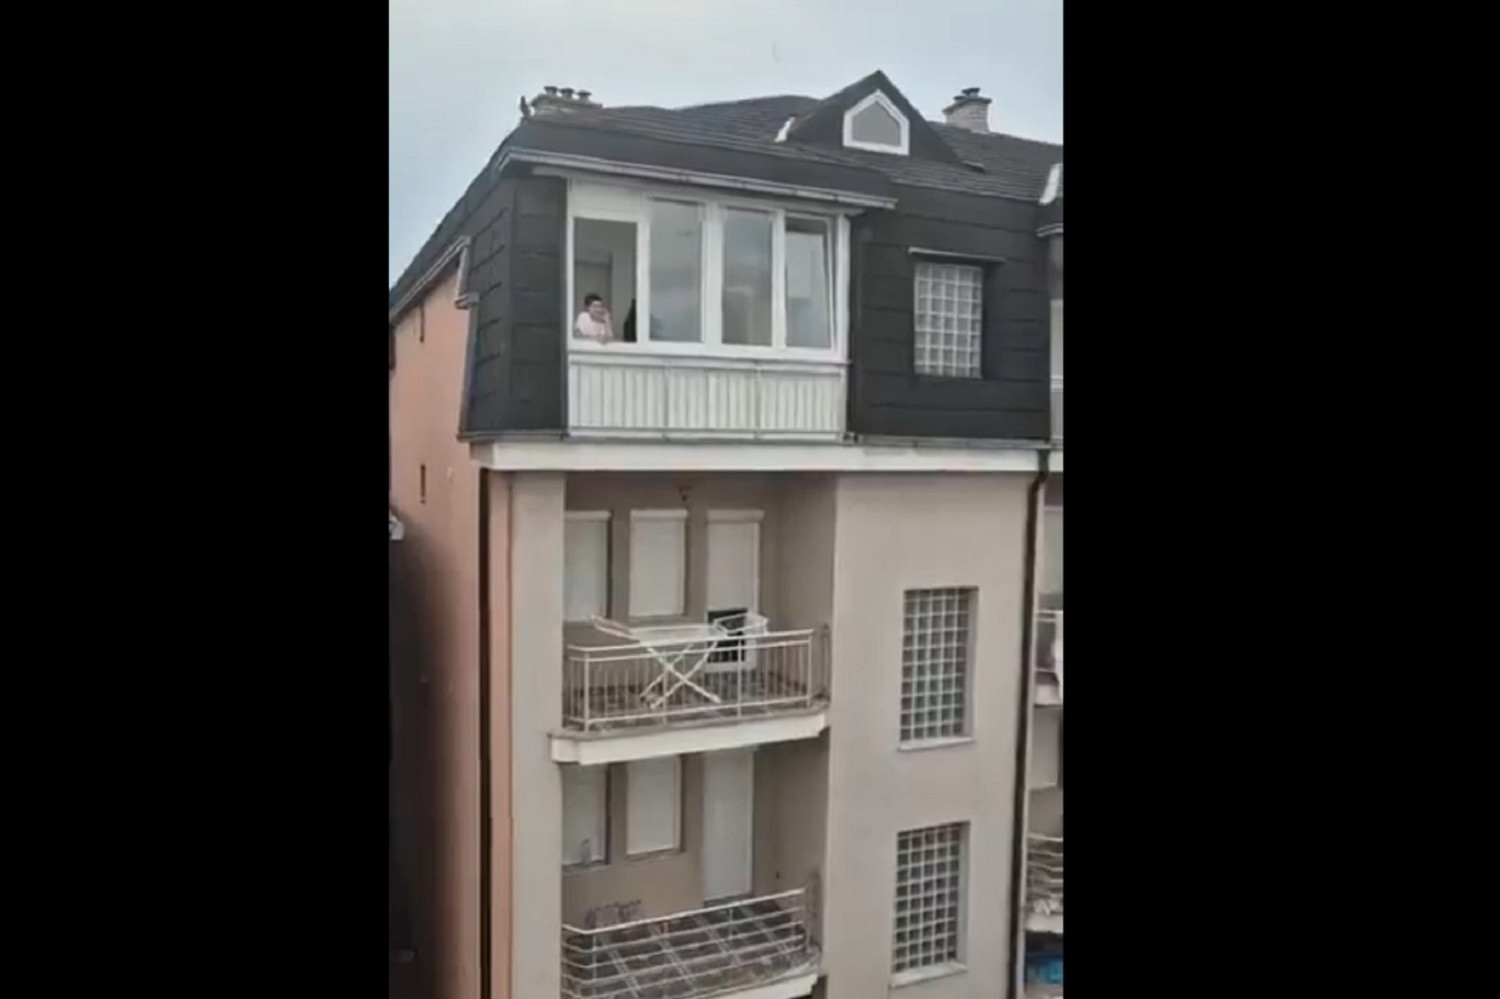 Kibic wdrapał się na dach, aby obejrzeć mecz z udziałem Wisły Kraków [FOTO] [WIDEO]